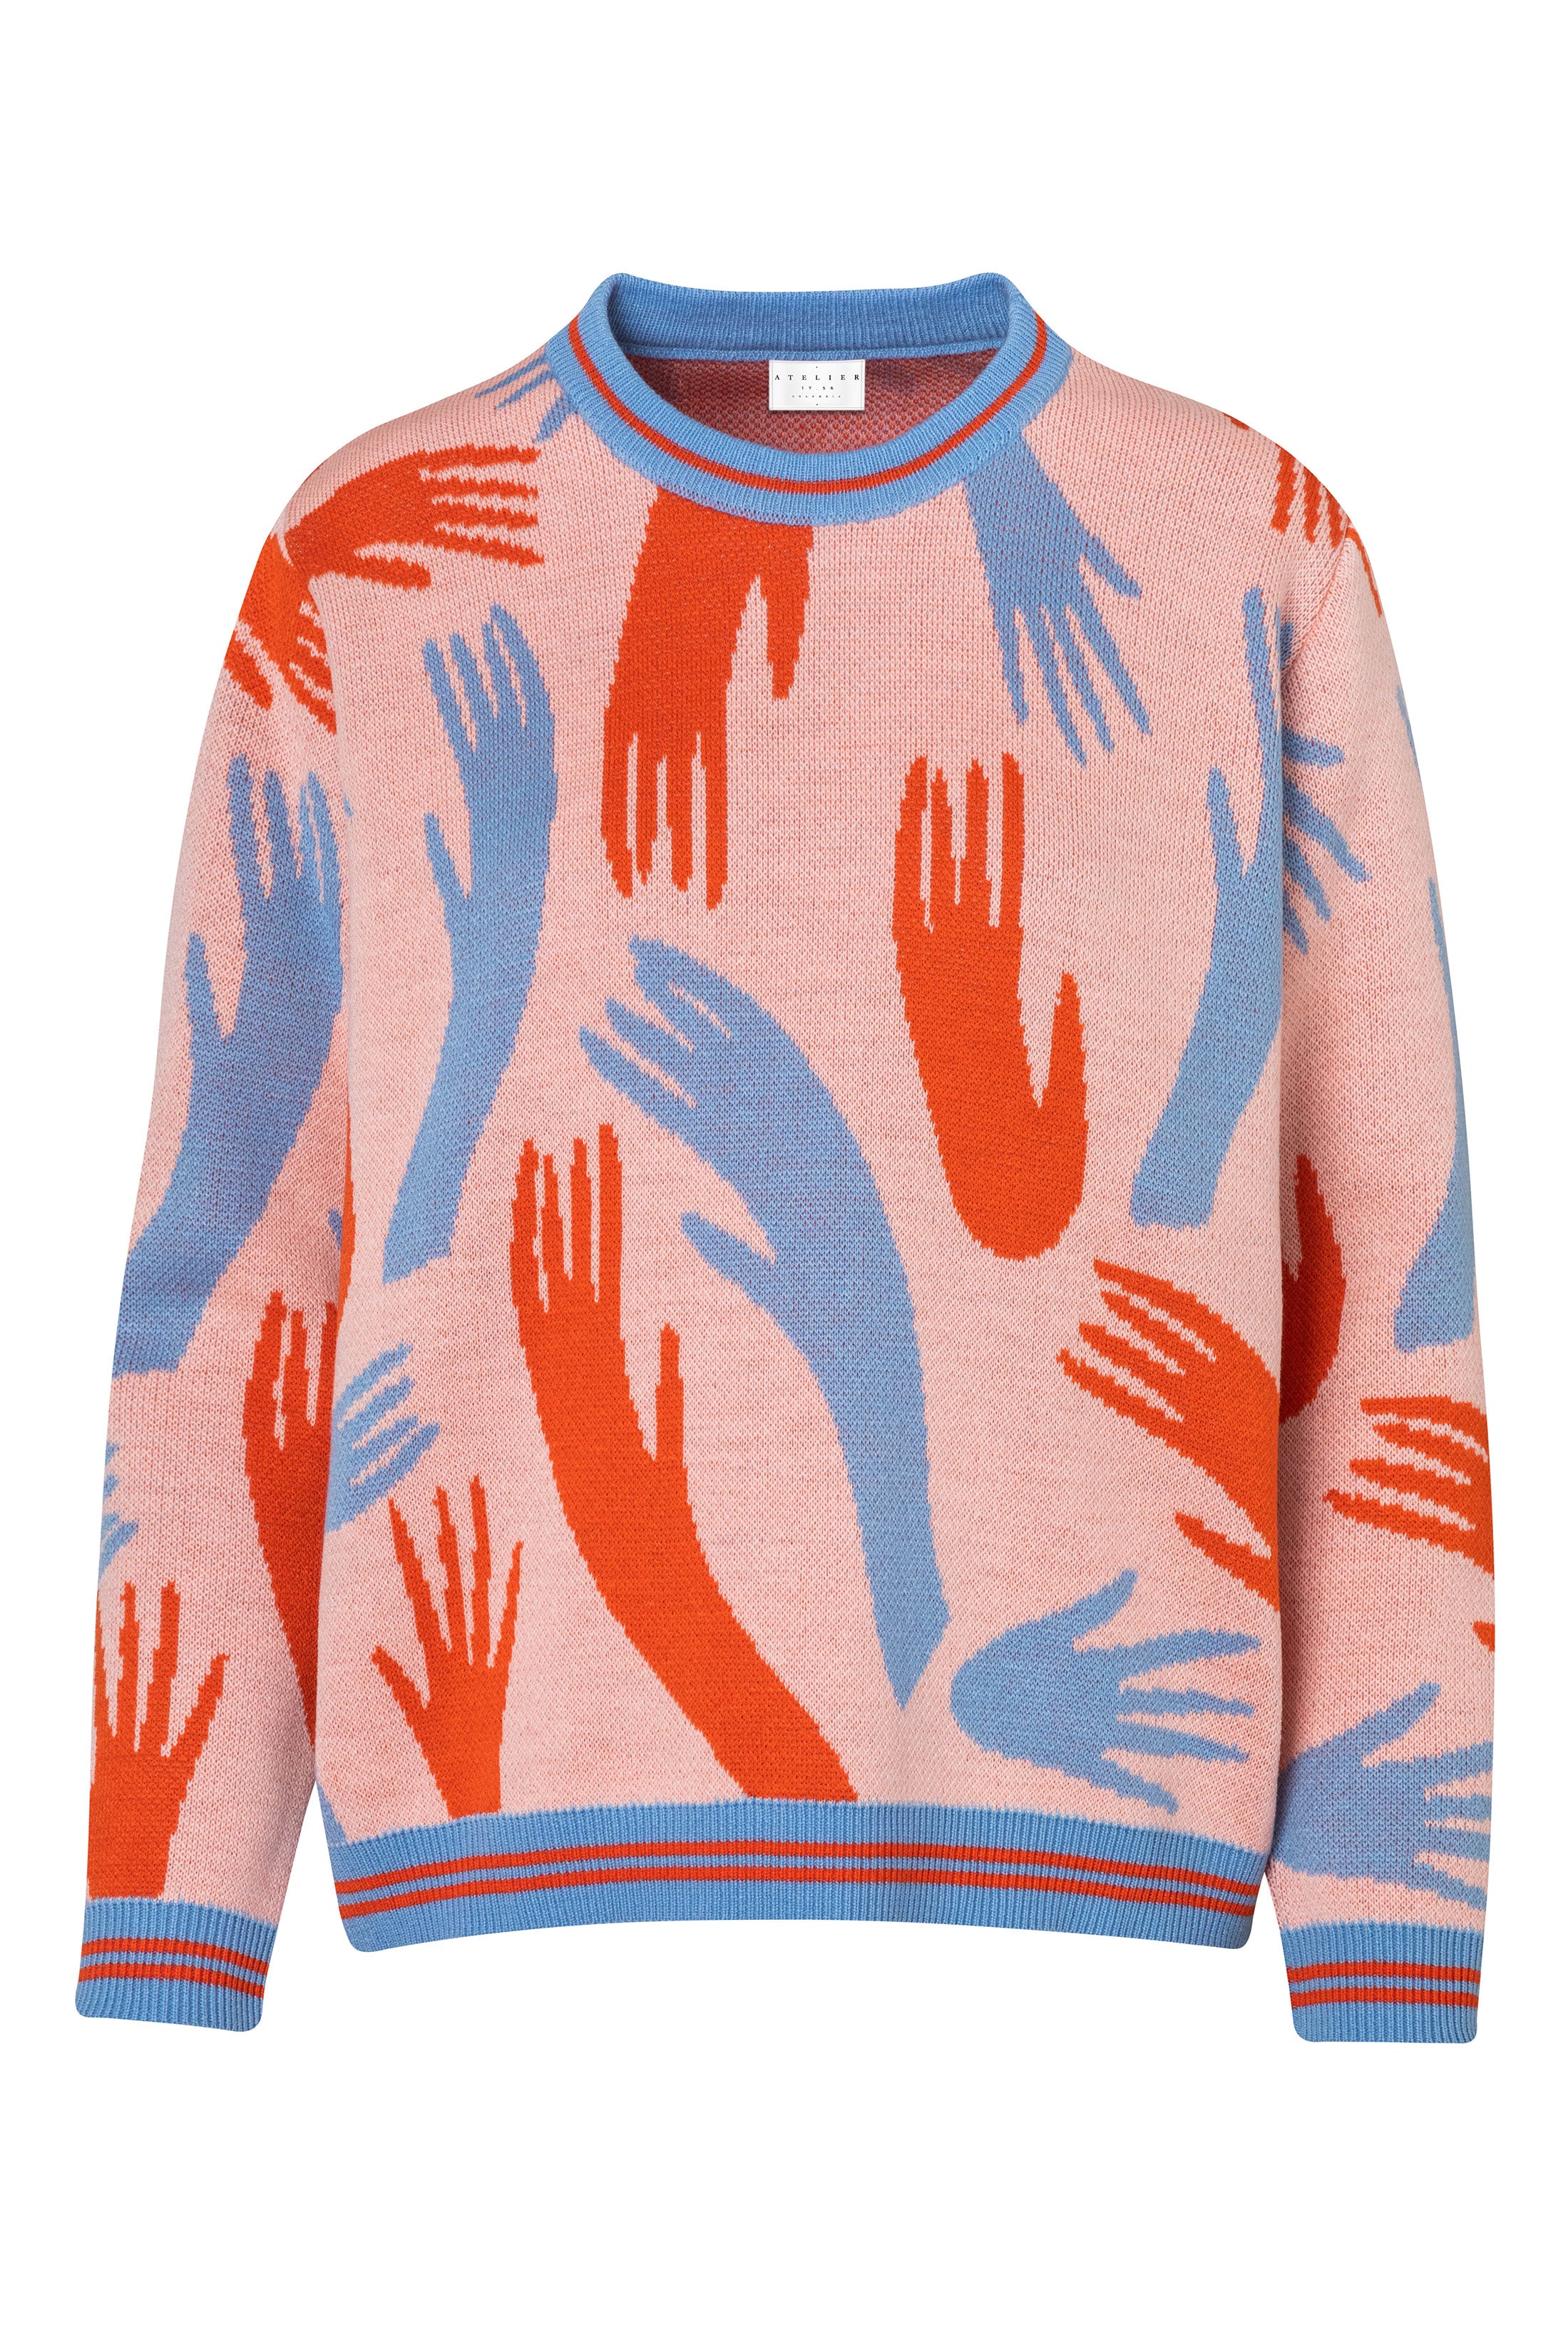 Blue Hands Sweater